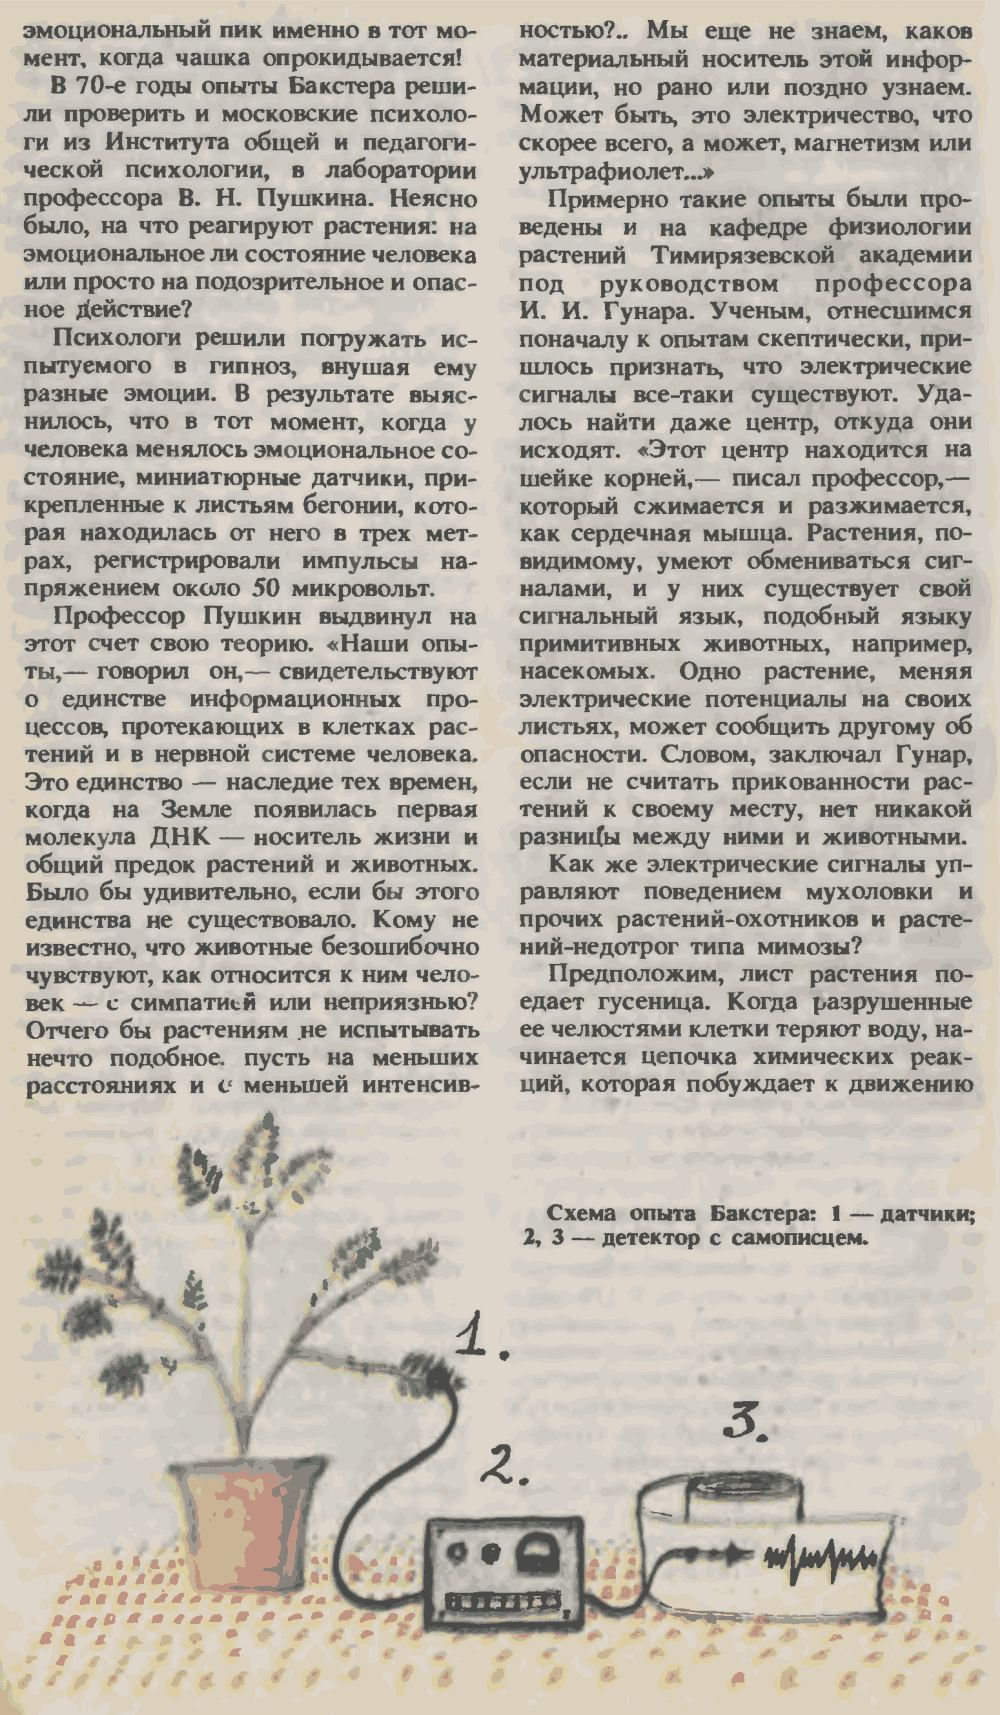 Растения и человек хоть и дальние, а родственники. О. Семенов. Юный техник, 1993, №3, с.14-19. Фотокопия №5